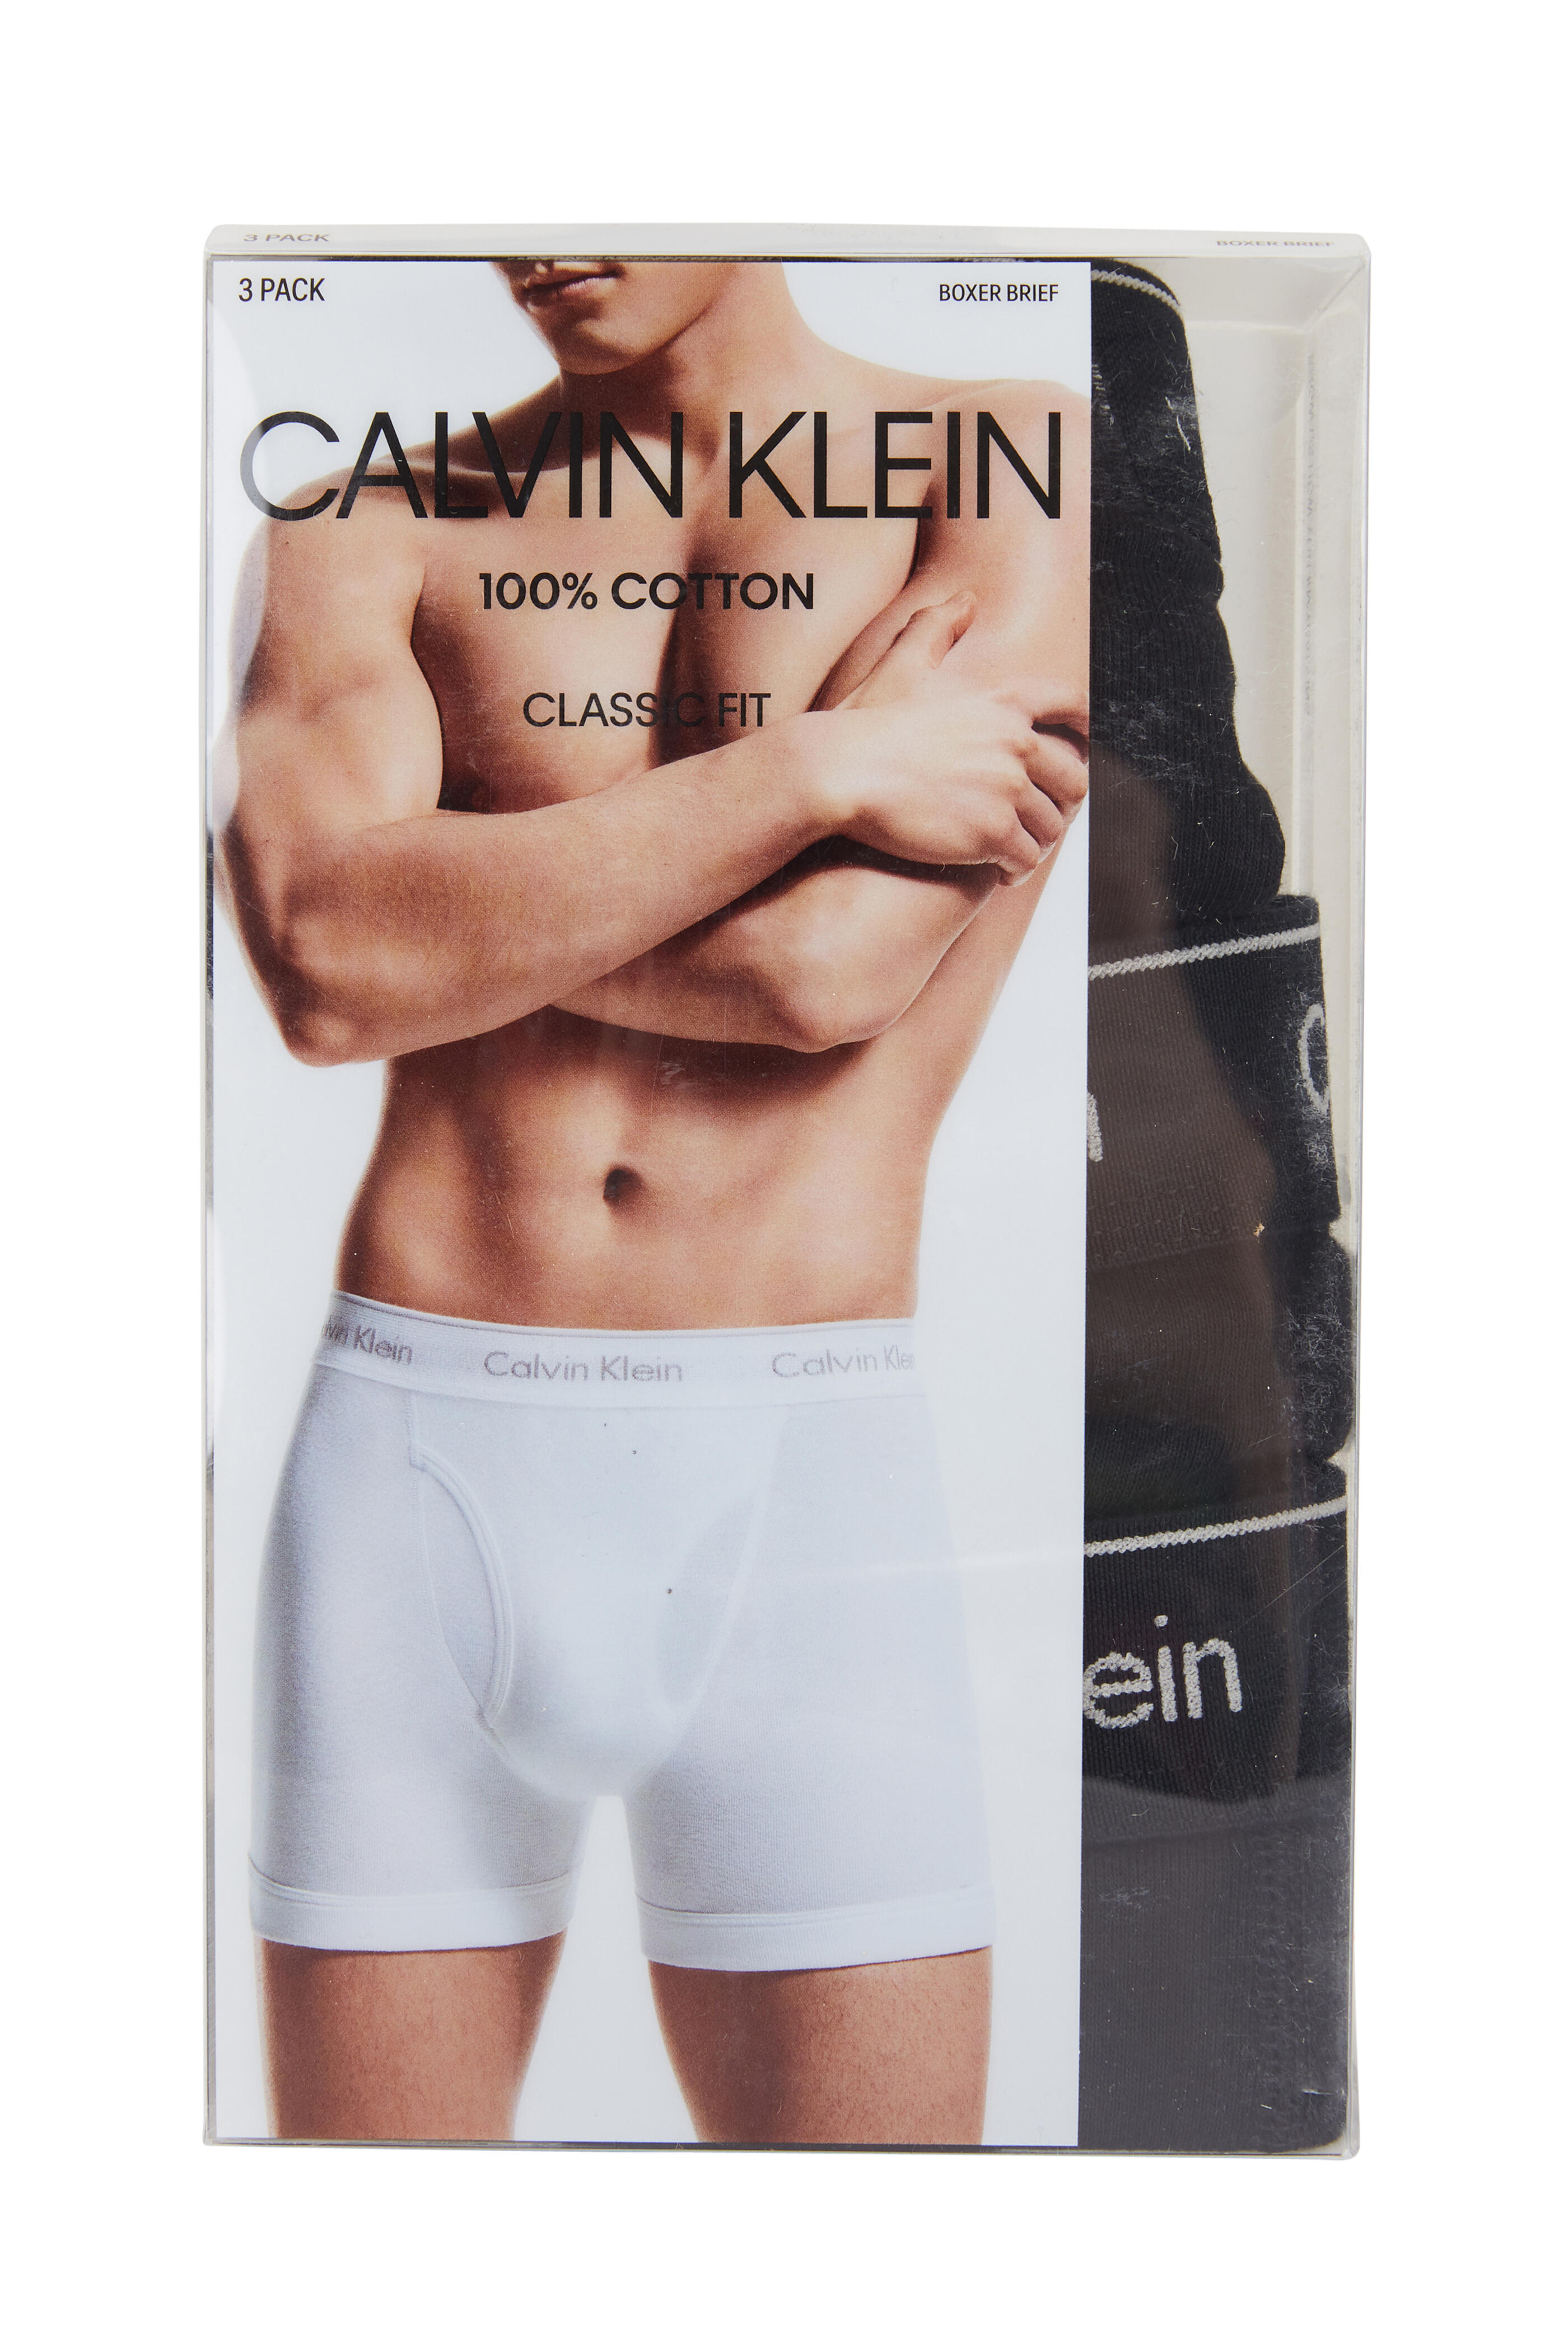 Calvin Klein Underwear, Underwear & Socks, Calvin Klein Classic Briefs  Size Small